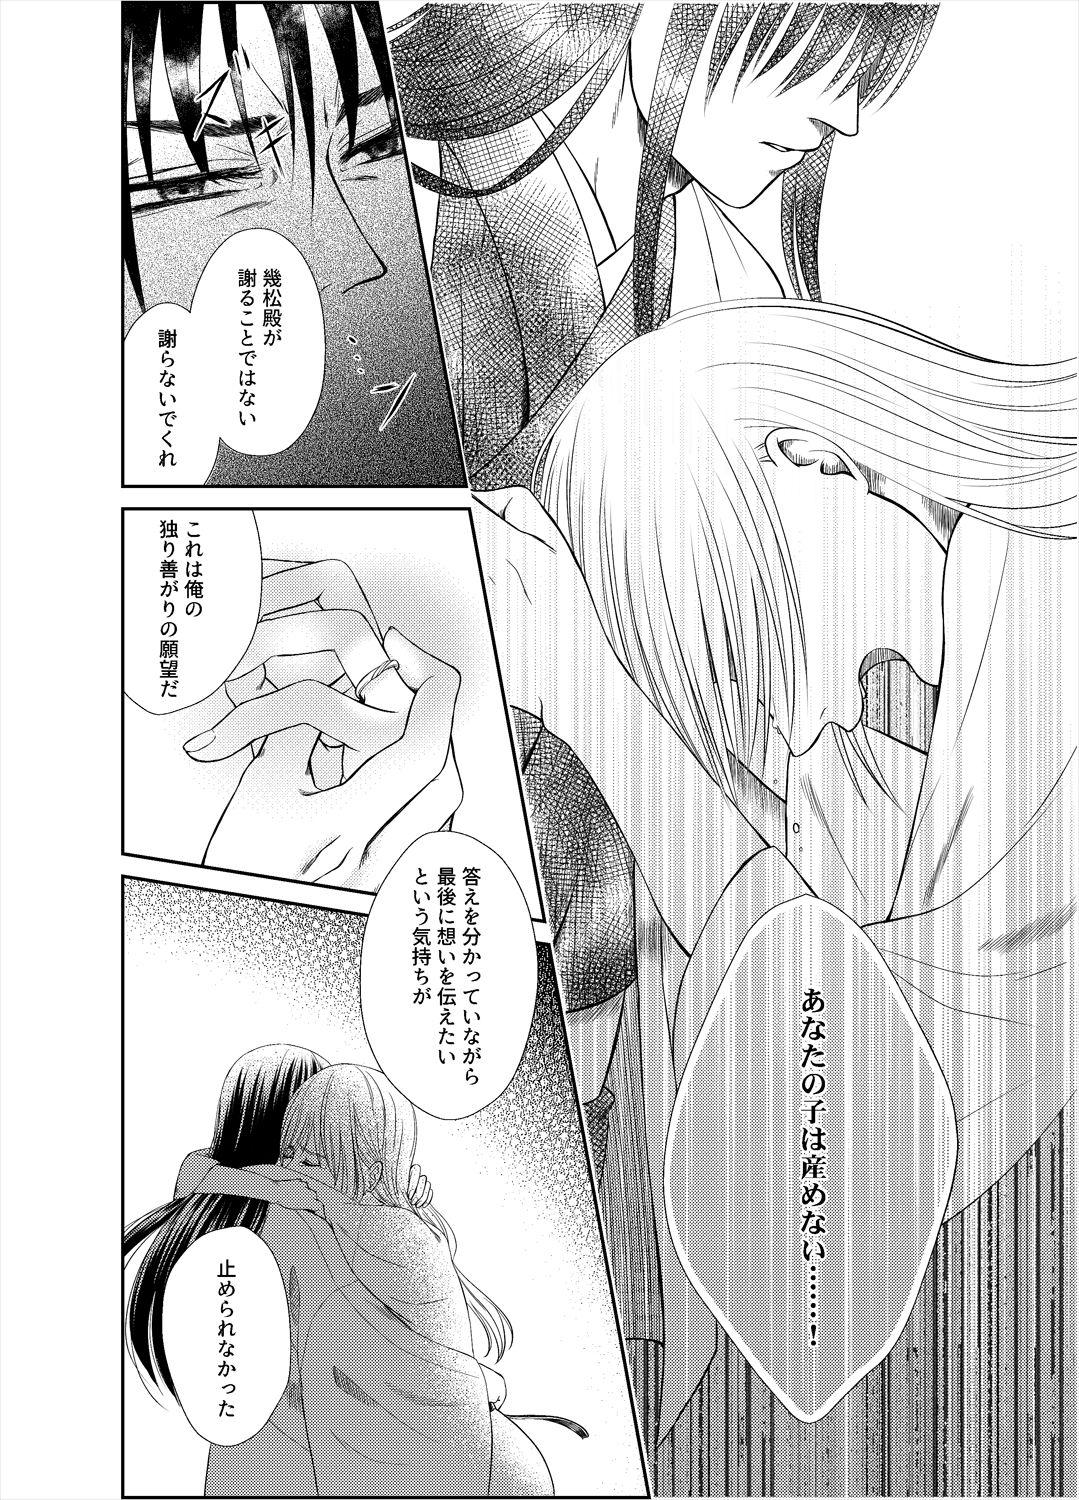 Farting Yonoya - Gintama Beard - Page 9